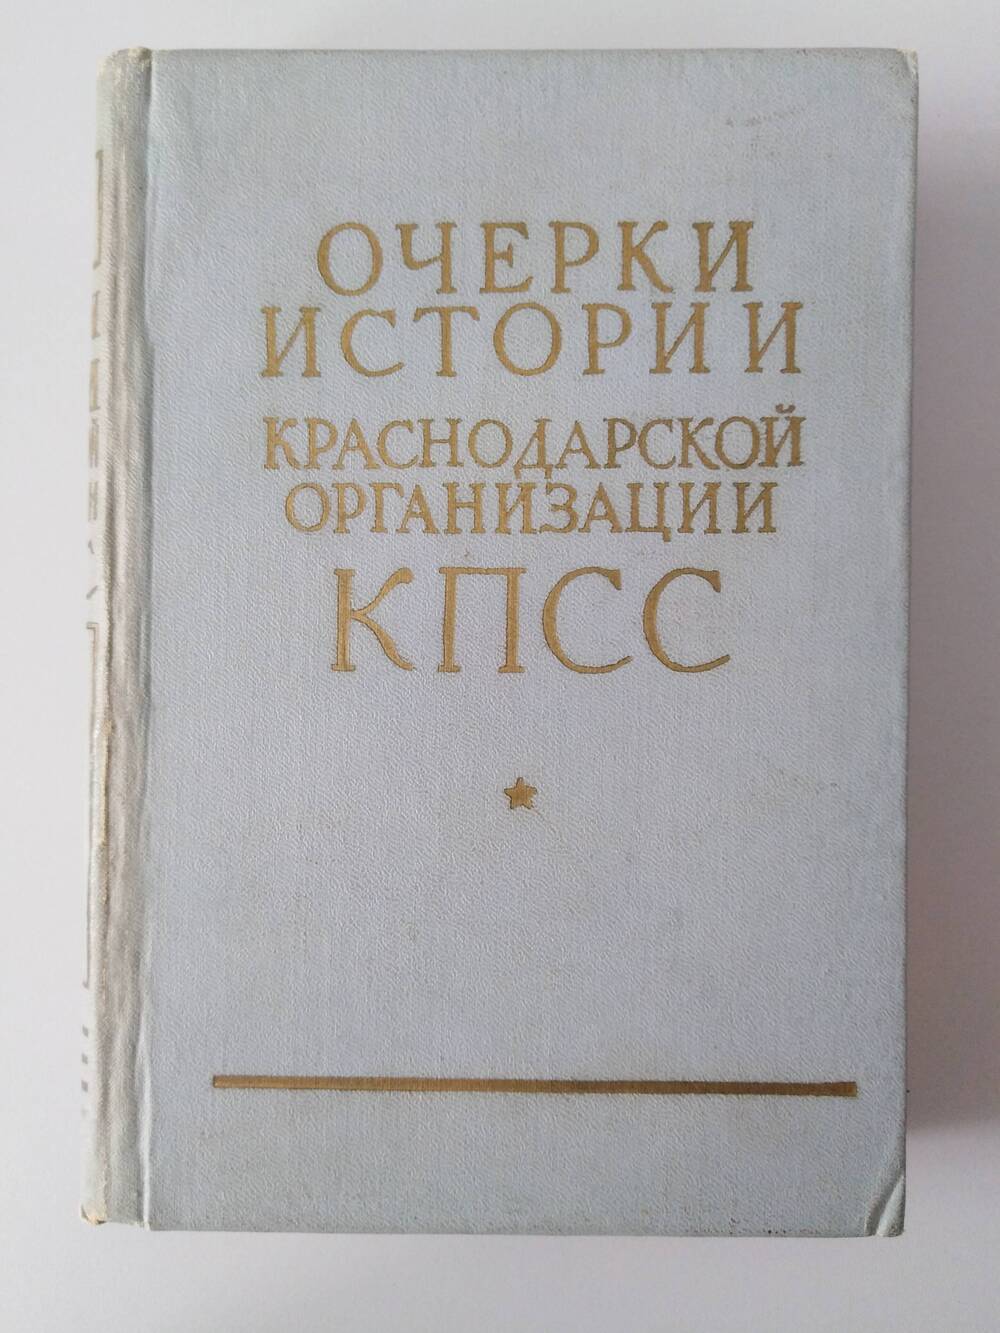 Книга «Очерки истории краснодарской организации КПСС»